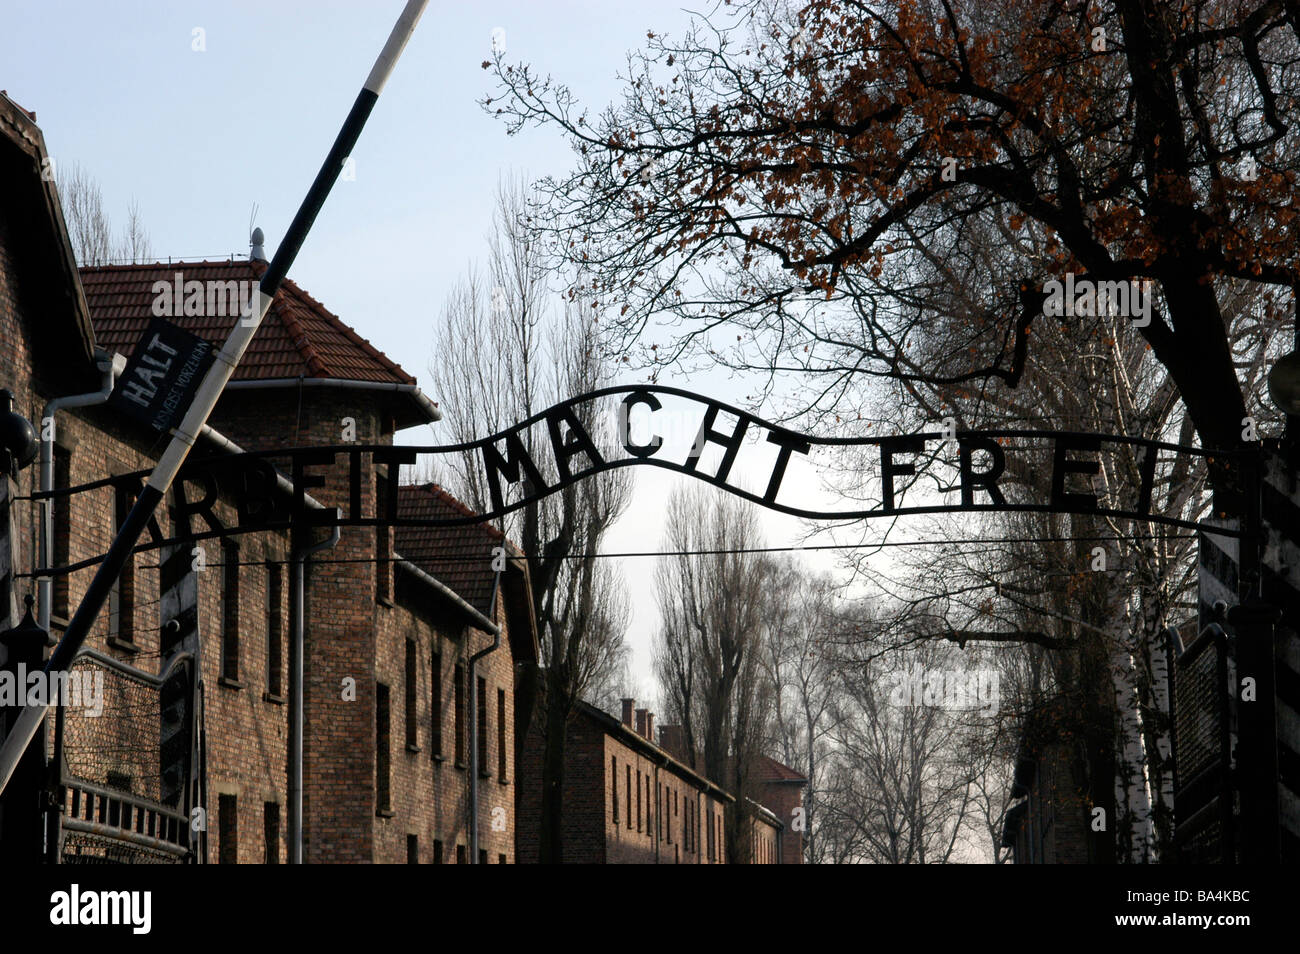 L'entrée du camp de concentration d'Auschwitz Cracovie Pologne où le signe signe dit "frais généraux de travail doit vous libérer' Banque D'Images